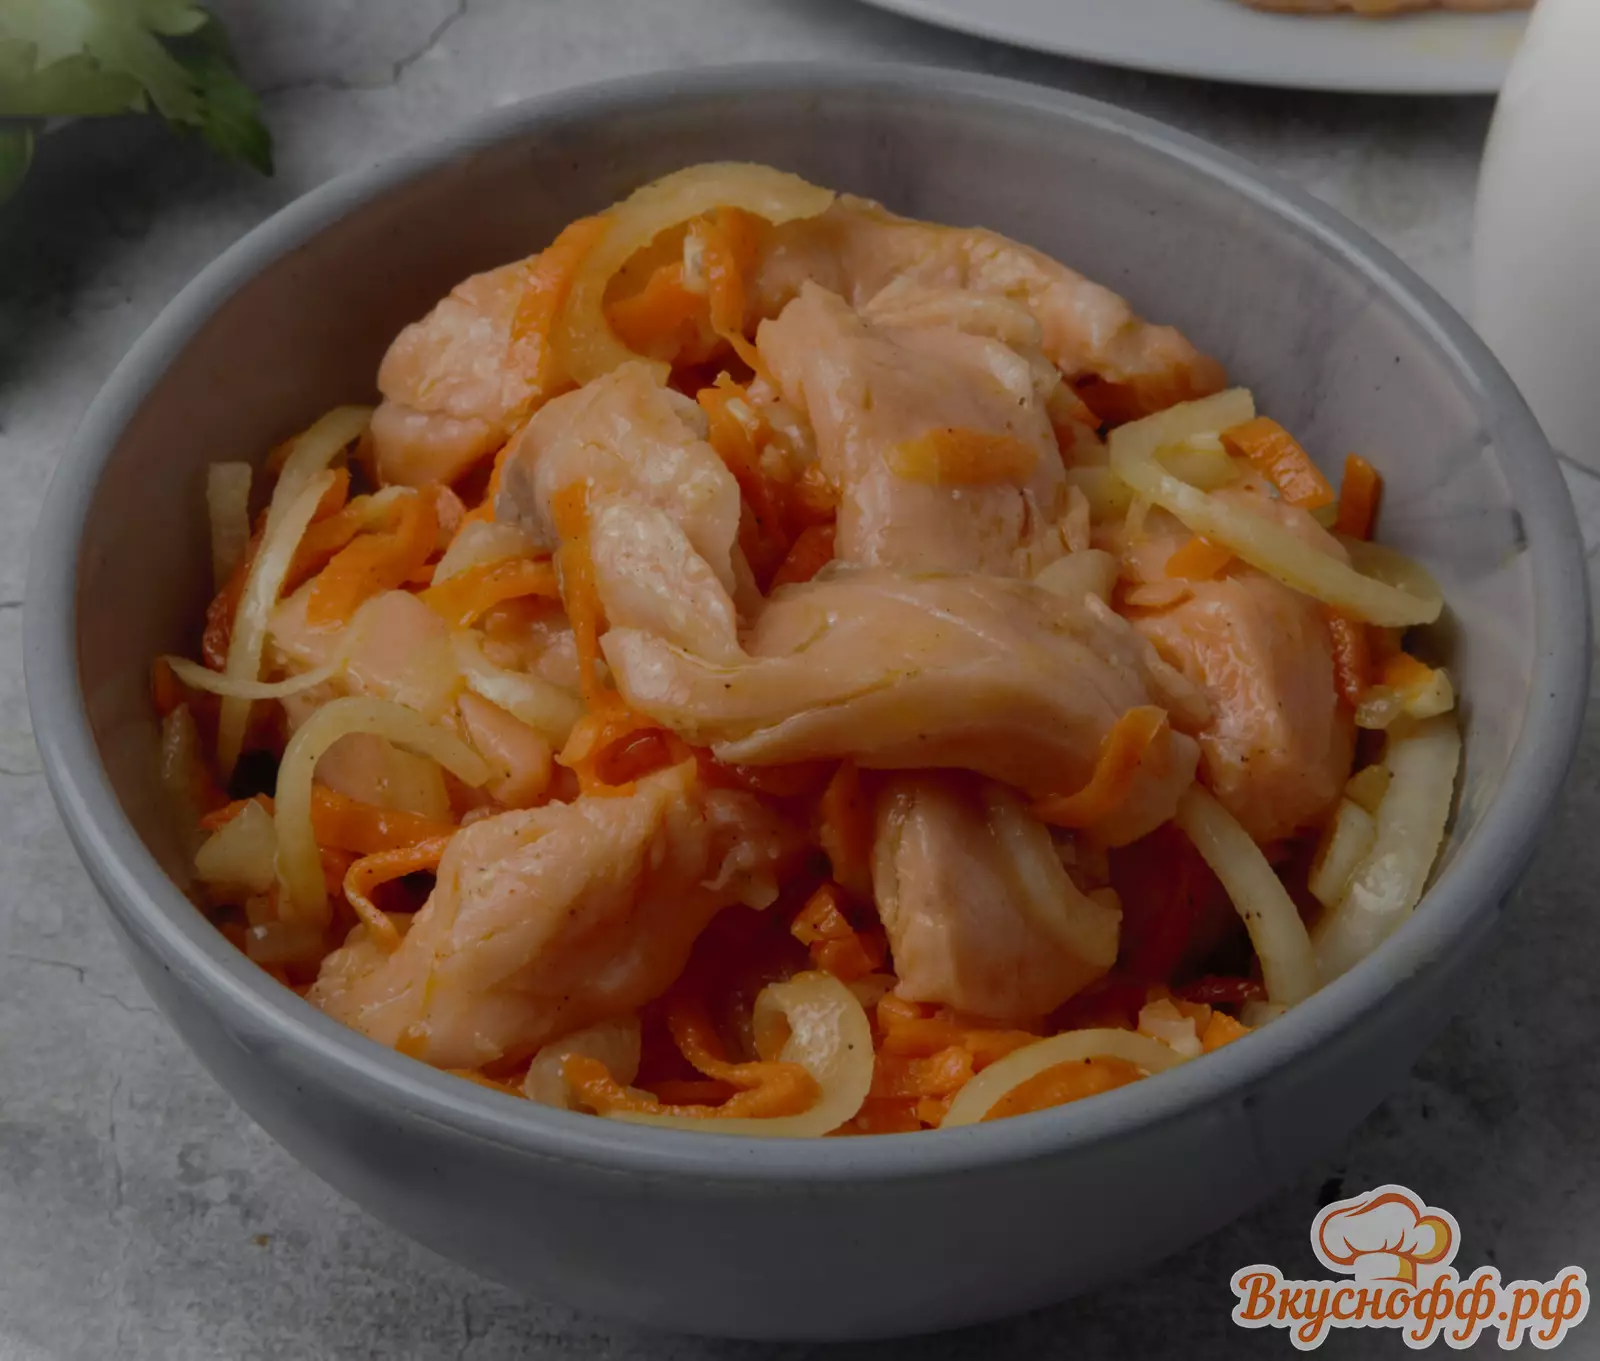 Рецепт Рыбы по корейски в домашних условиях - с морского дна прямо на ваш стол!